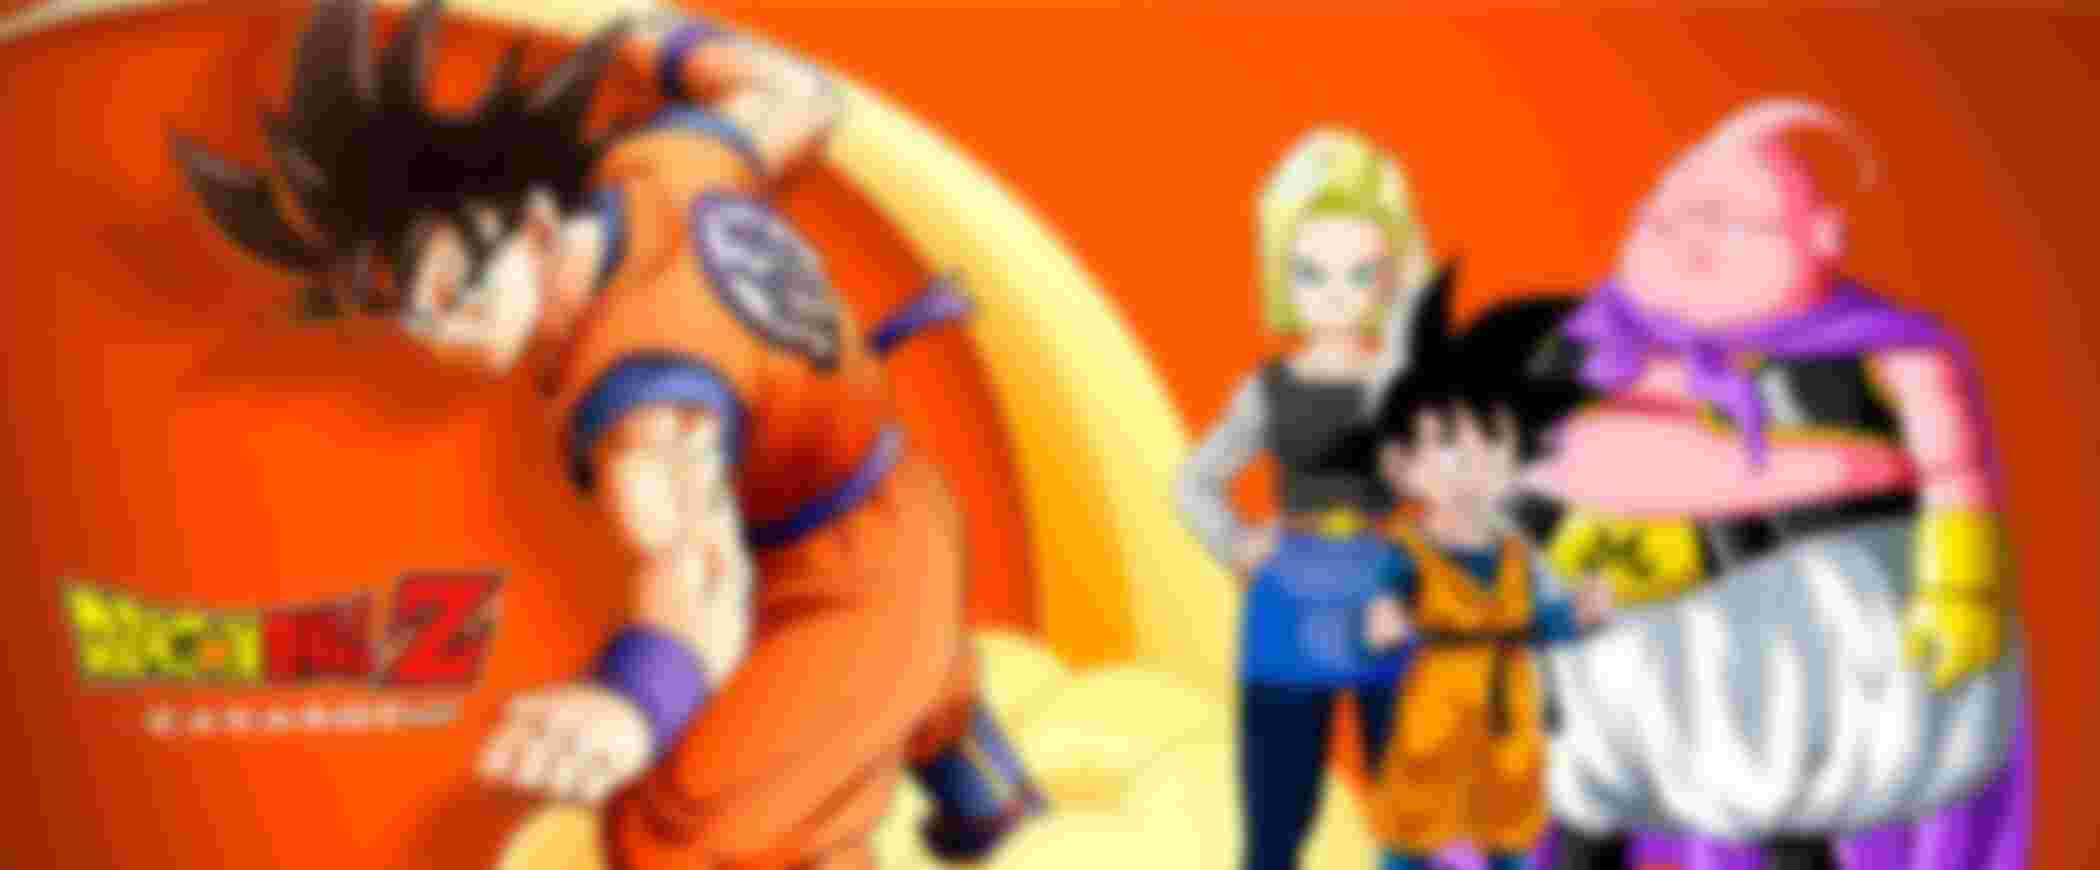 Goku en nube kinto con son gohanda, buu y cyborg c18